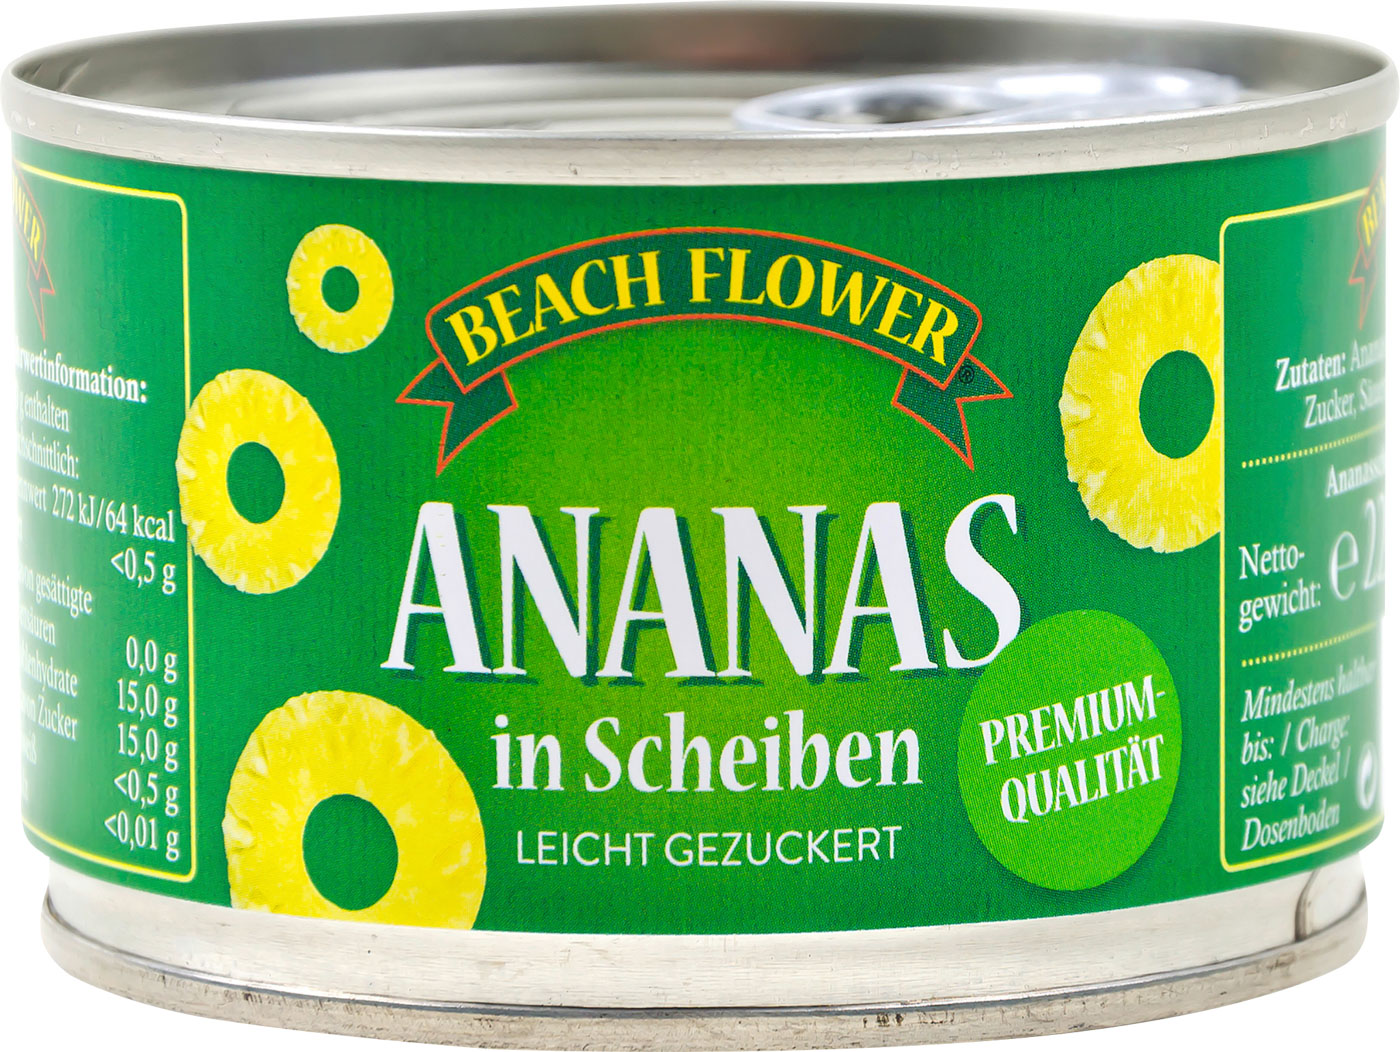 Beach Flower Ananas Scheiben Konserve 227G